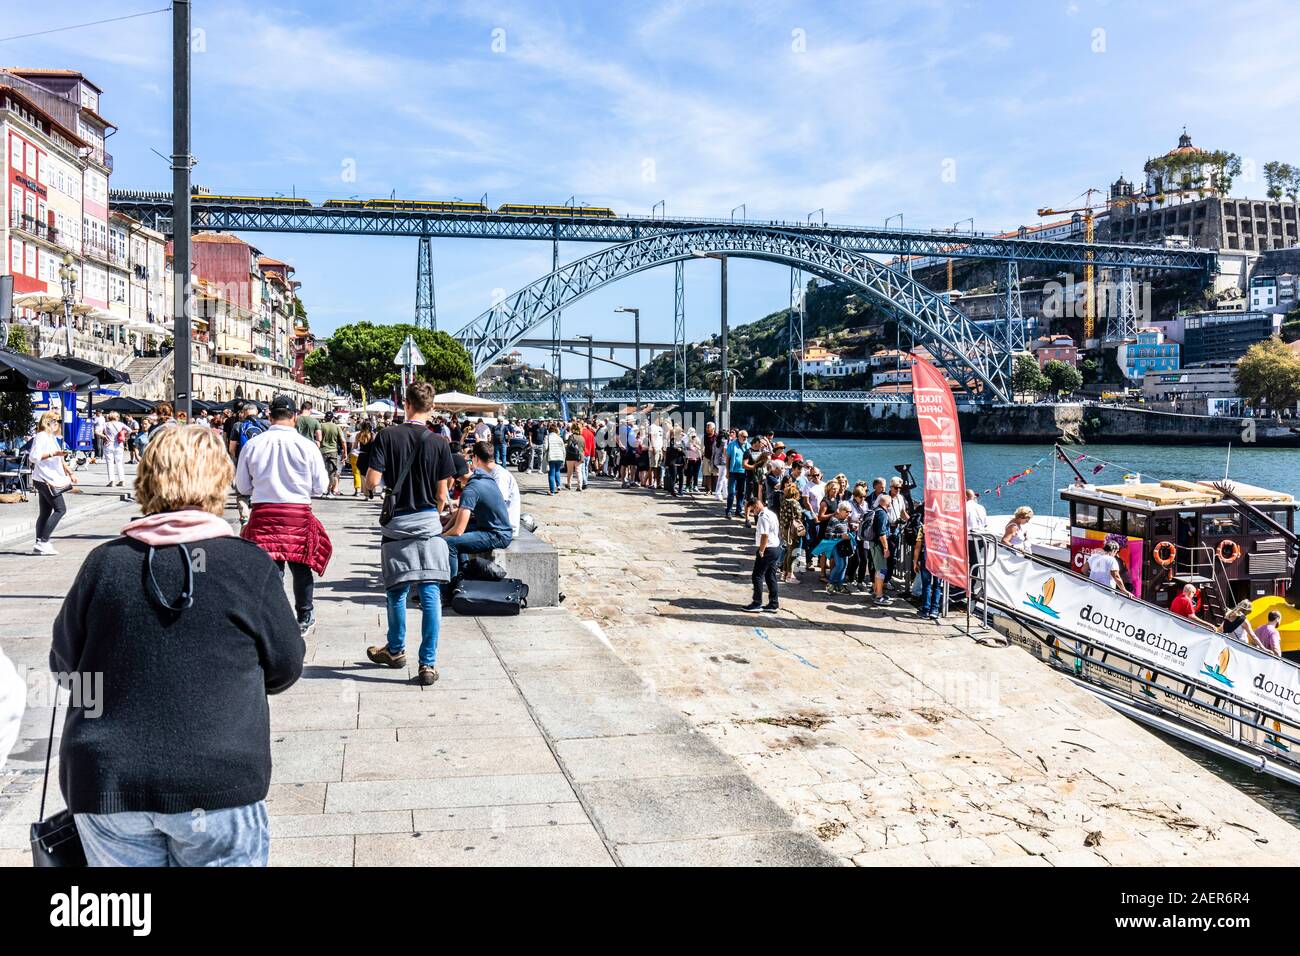 Porto, Nordufer des Douro Flusses ostwärts gegen Luis I Brücke. Touristen Warteschlange Bootsfahrten auf dem Fluss Douro zu nehmen Stockfoto